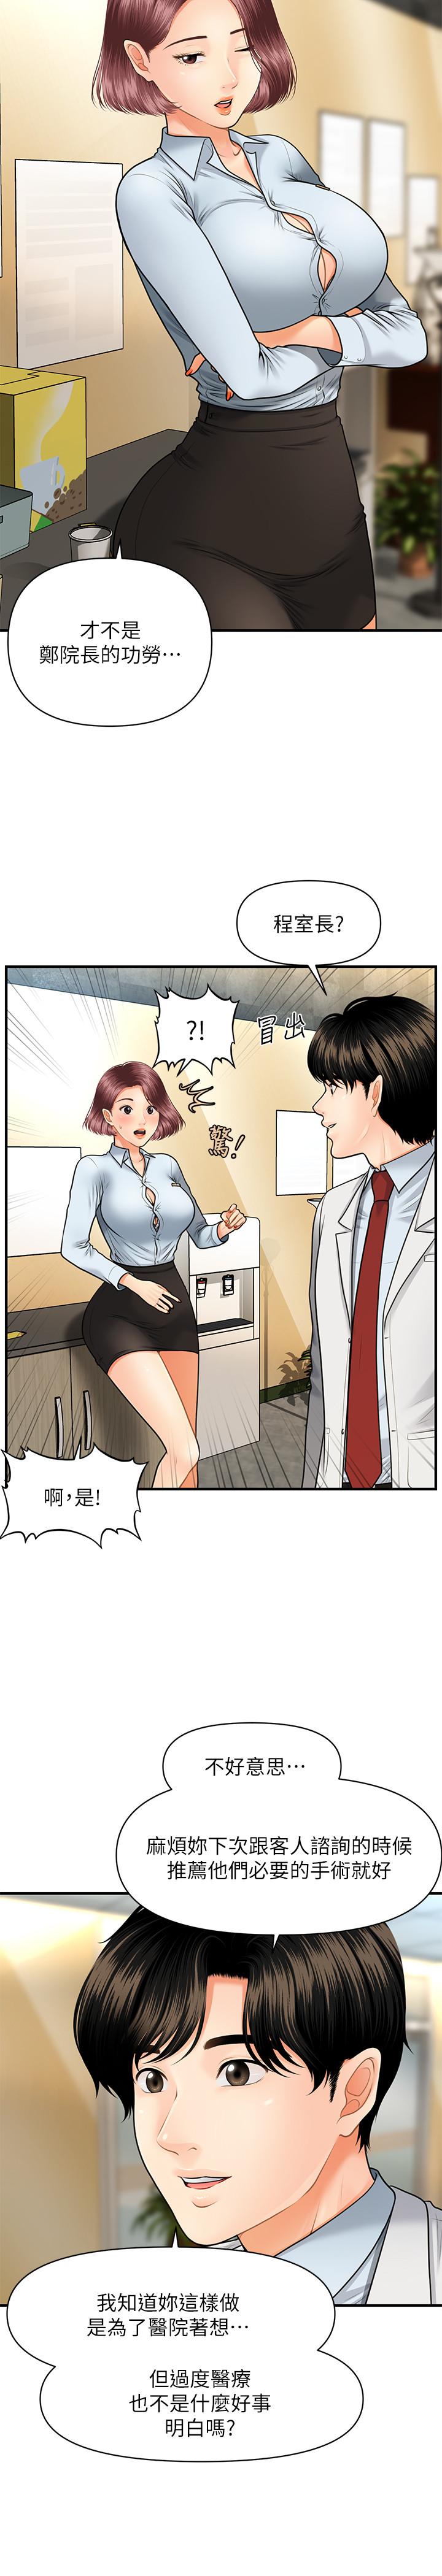 《医美奇鸡》漫画 第6话-私密处触诊